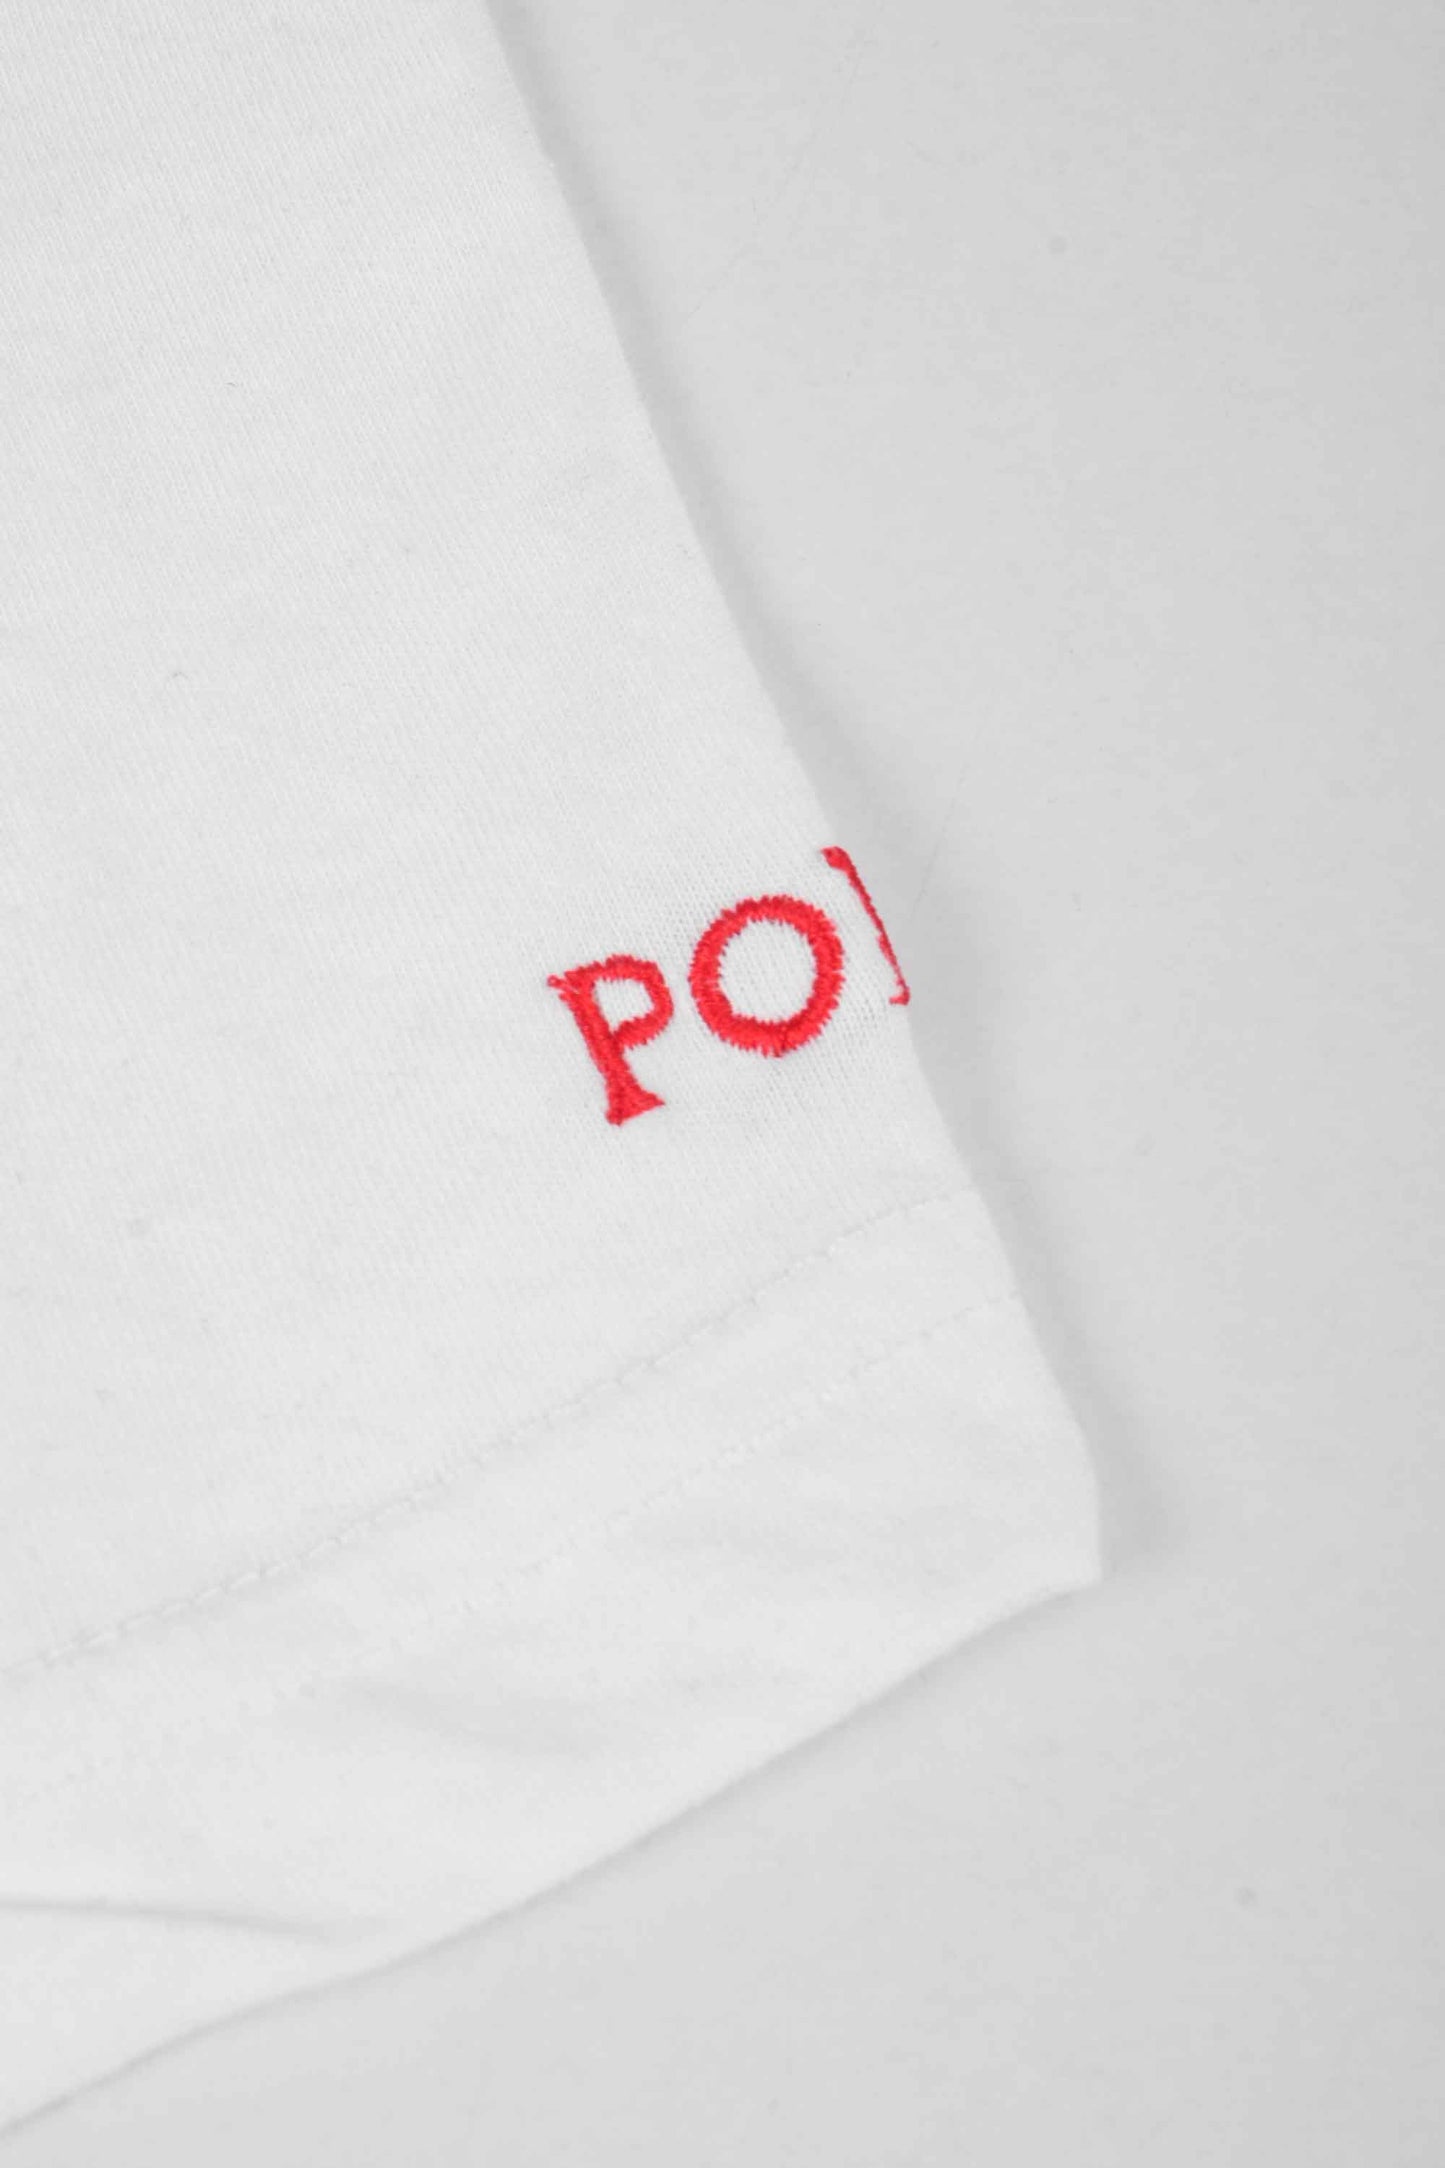 Polo Republica Men's Polo And Crest Embroidered Crew Neck Tee Shirt Men's Tee Shirt Polo Republica 